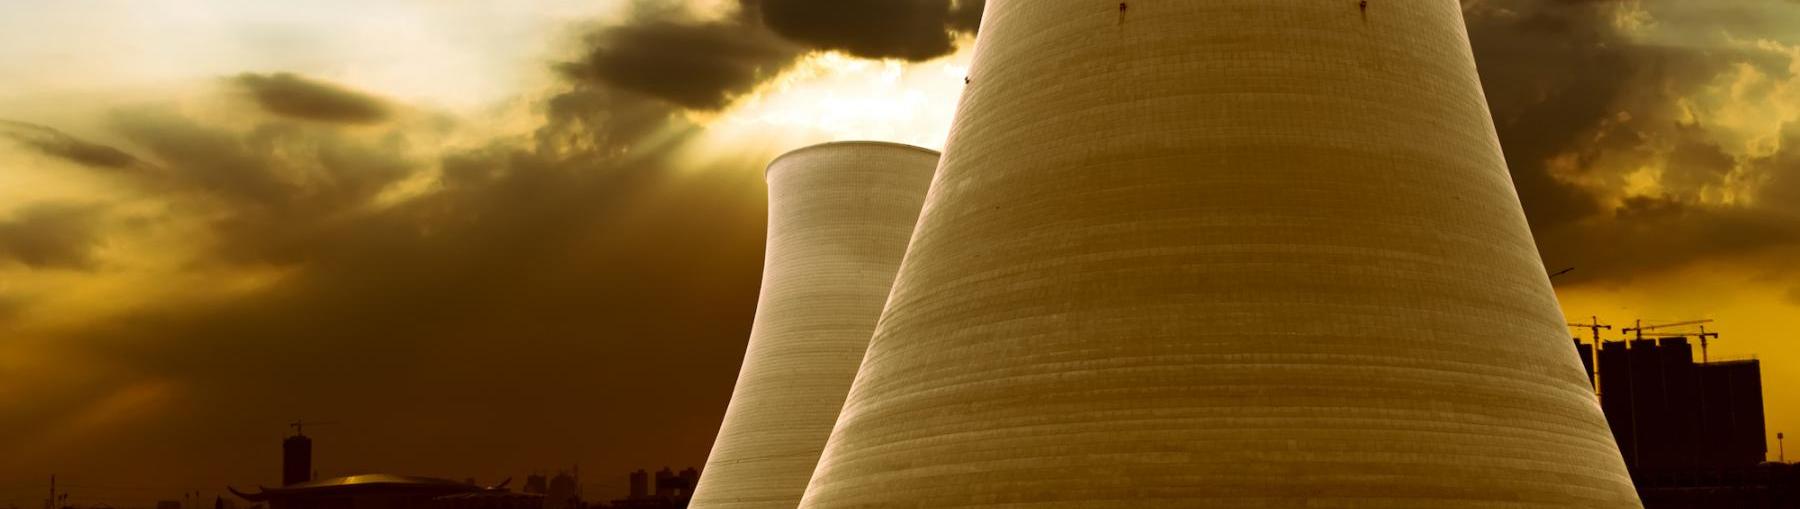 Będzie kontrola w białoruskiej elektrowni atomowej. Fot. Shutterstock